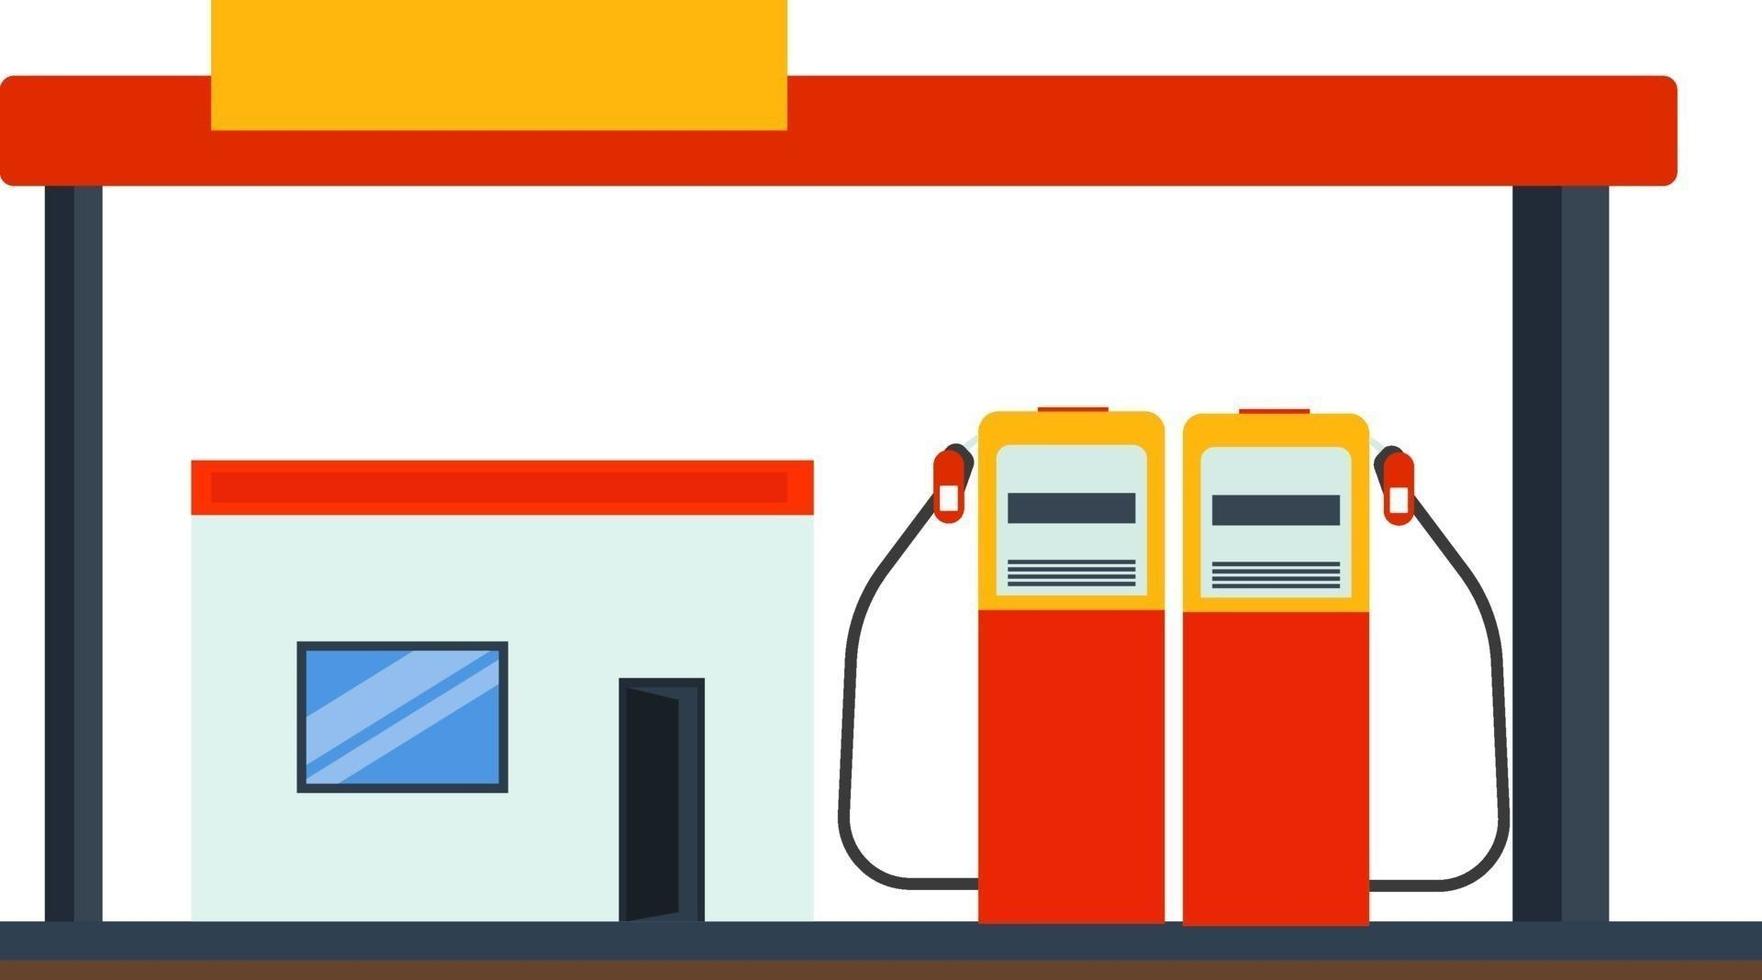 distributore di benzina, illustrazione, vettore su sfondo bianco.